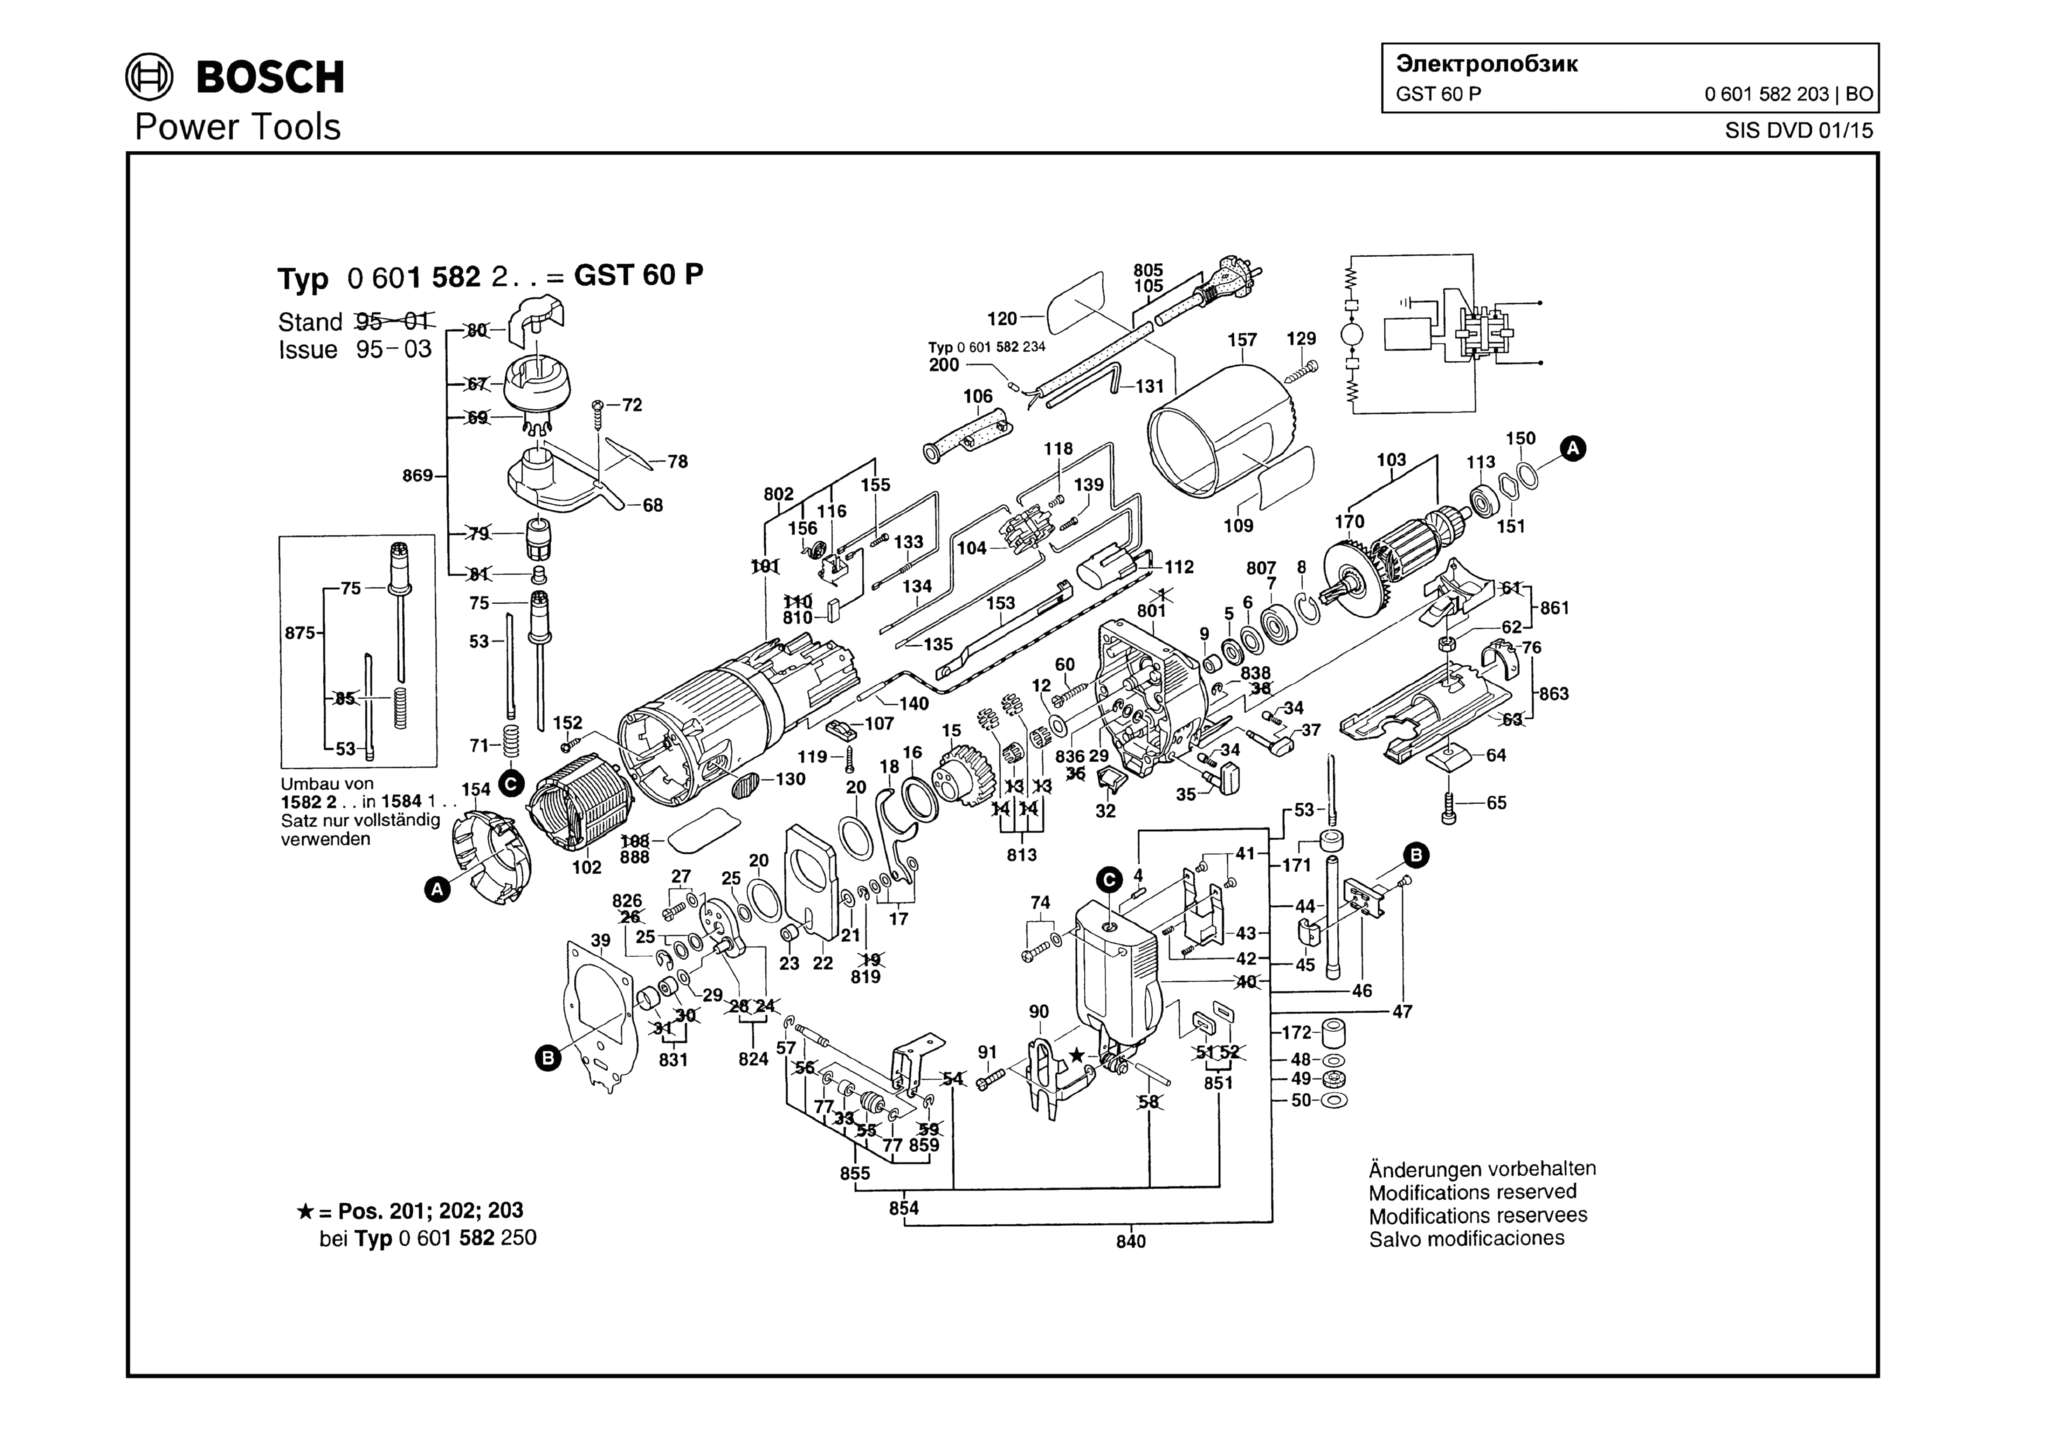 Запчасти, схема и деталировка Bosch GST 60 P (ТИП 0601582203)